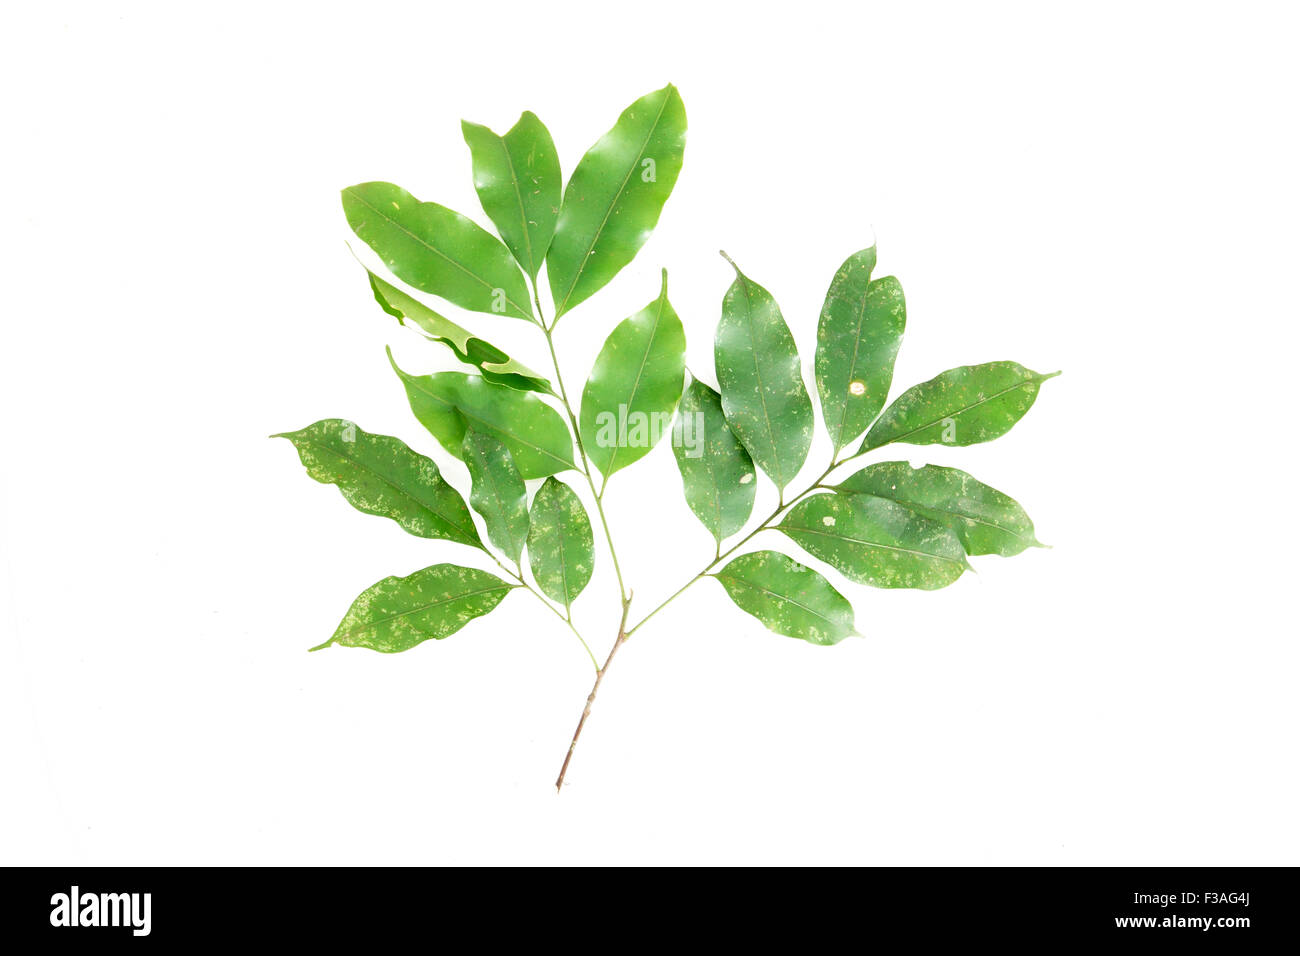 Reinwardtiodendron humile Meliaceae flora Borneo Malaysia Stock Photo